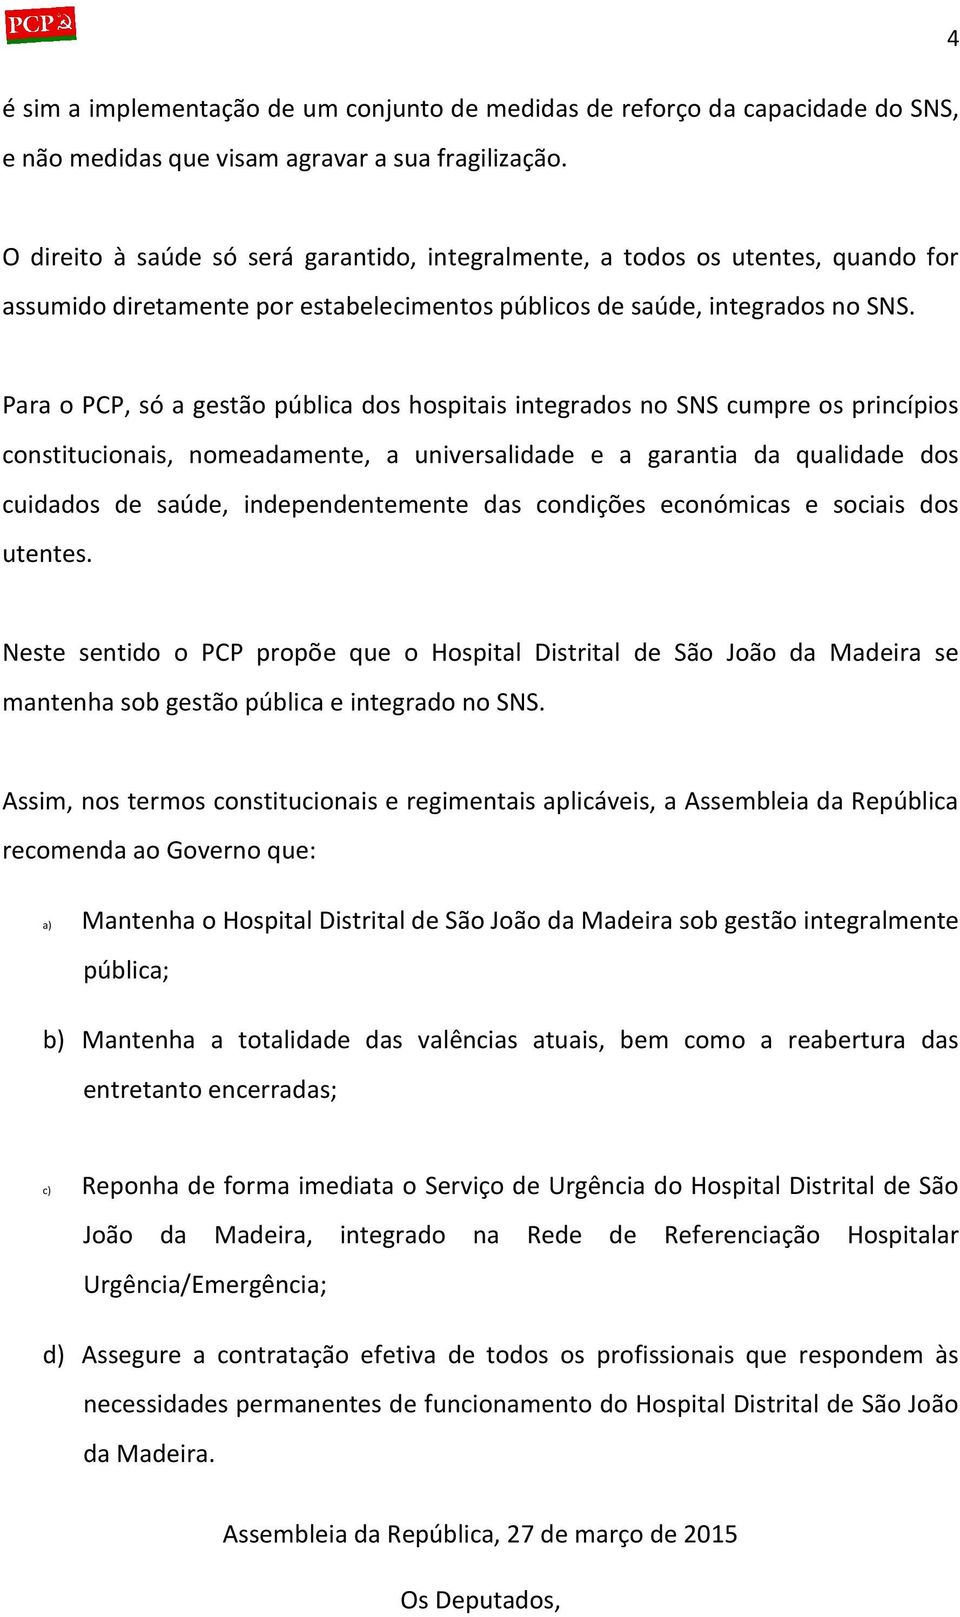 Para o PCP, só a gestão pública dos hospitais integrados no SNS cumpre os princípios constitucionais, nomeadamente, a universalidade e a garantia da qualidade dos cuidados de saúde, independentemente